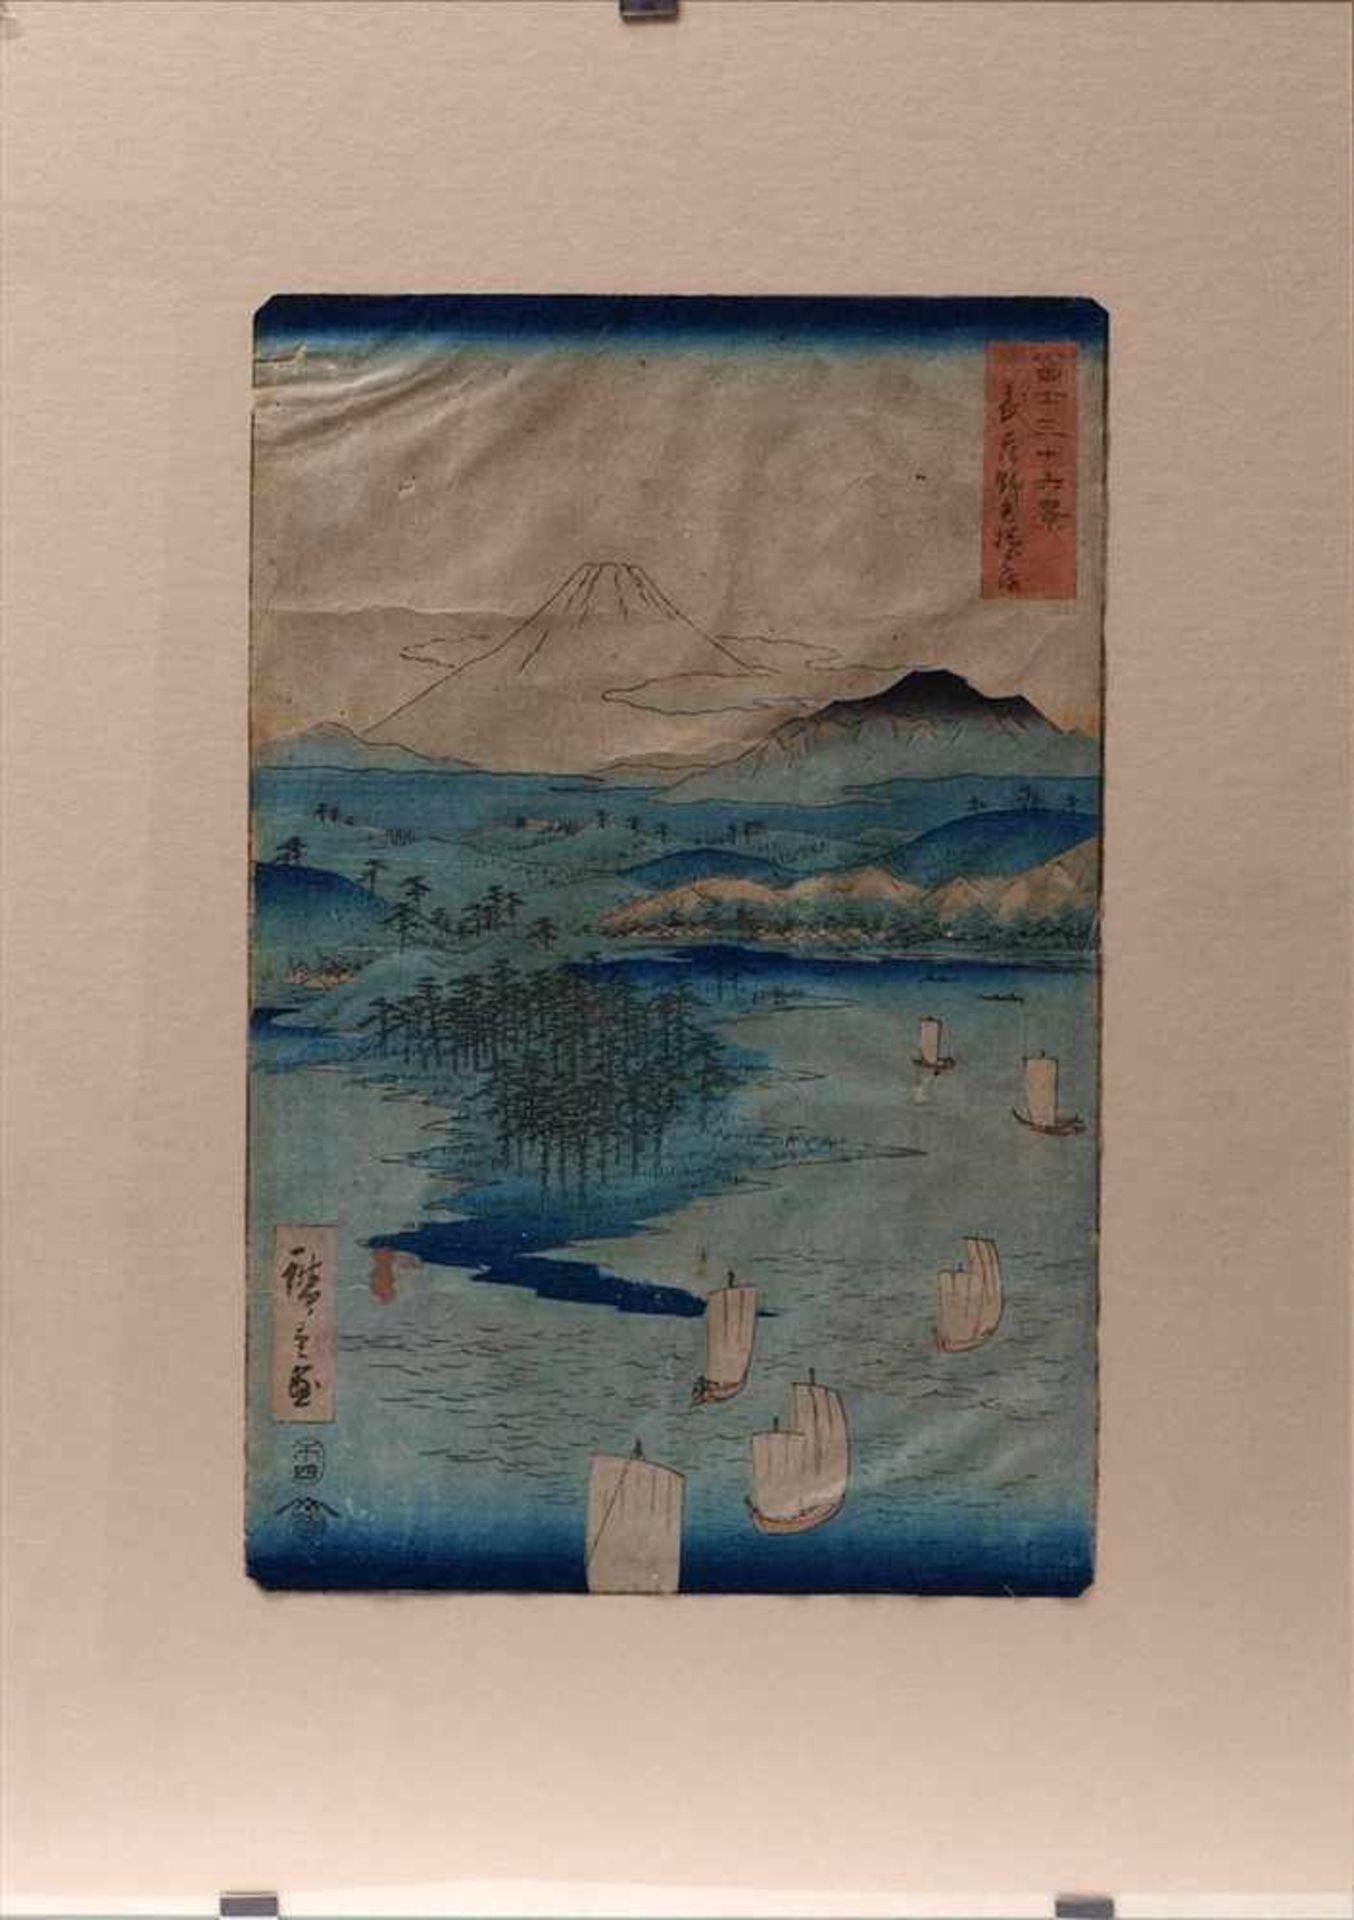 Farbholzschnitt, Japan, 19.Jhdt.Wohl Hiroshige I oder II. Weite Seenlandschaft mit Fischerbooten und